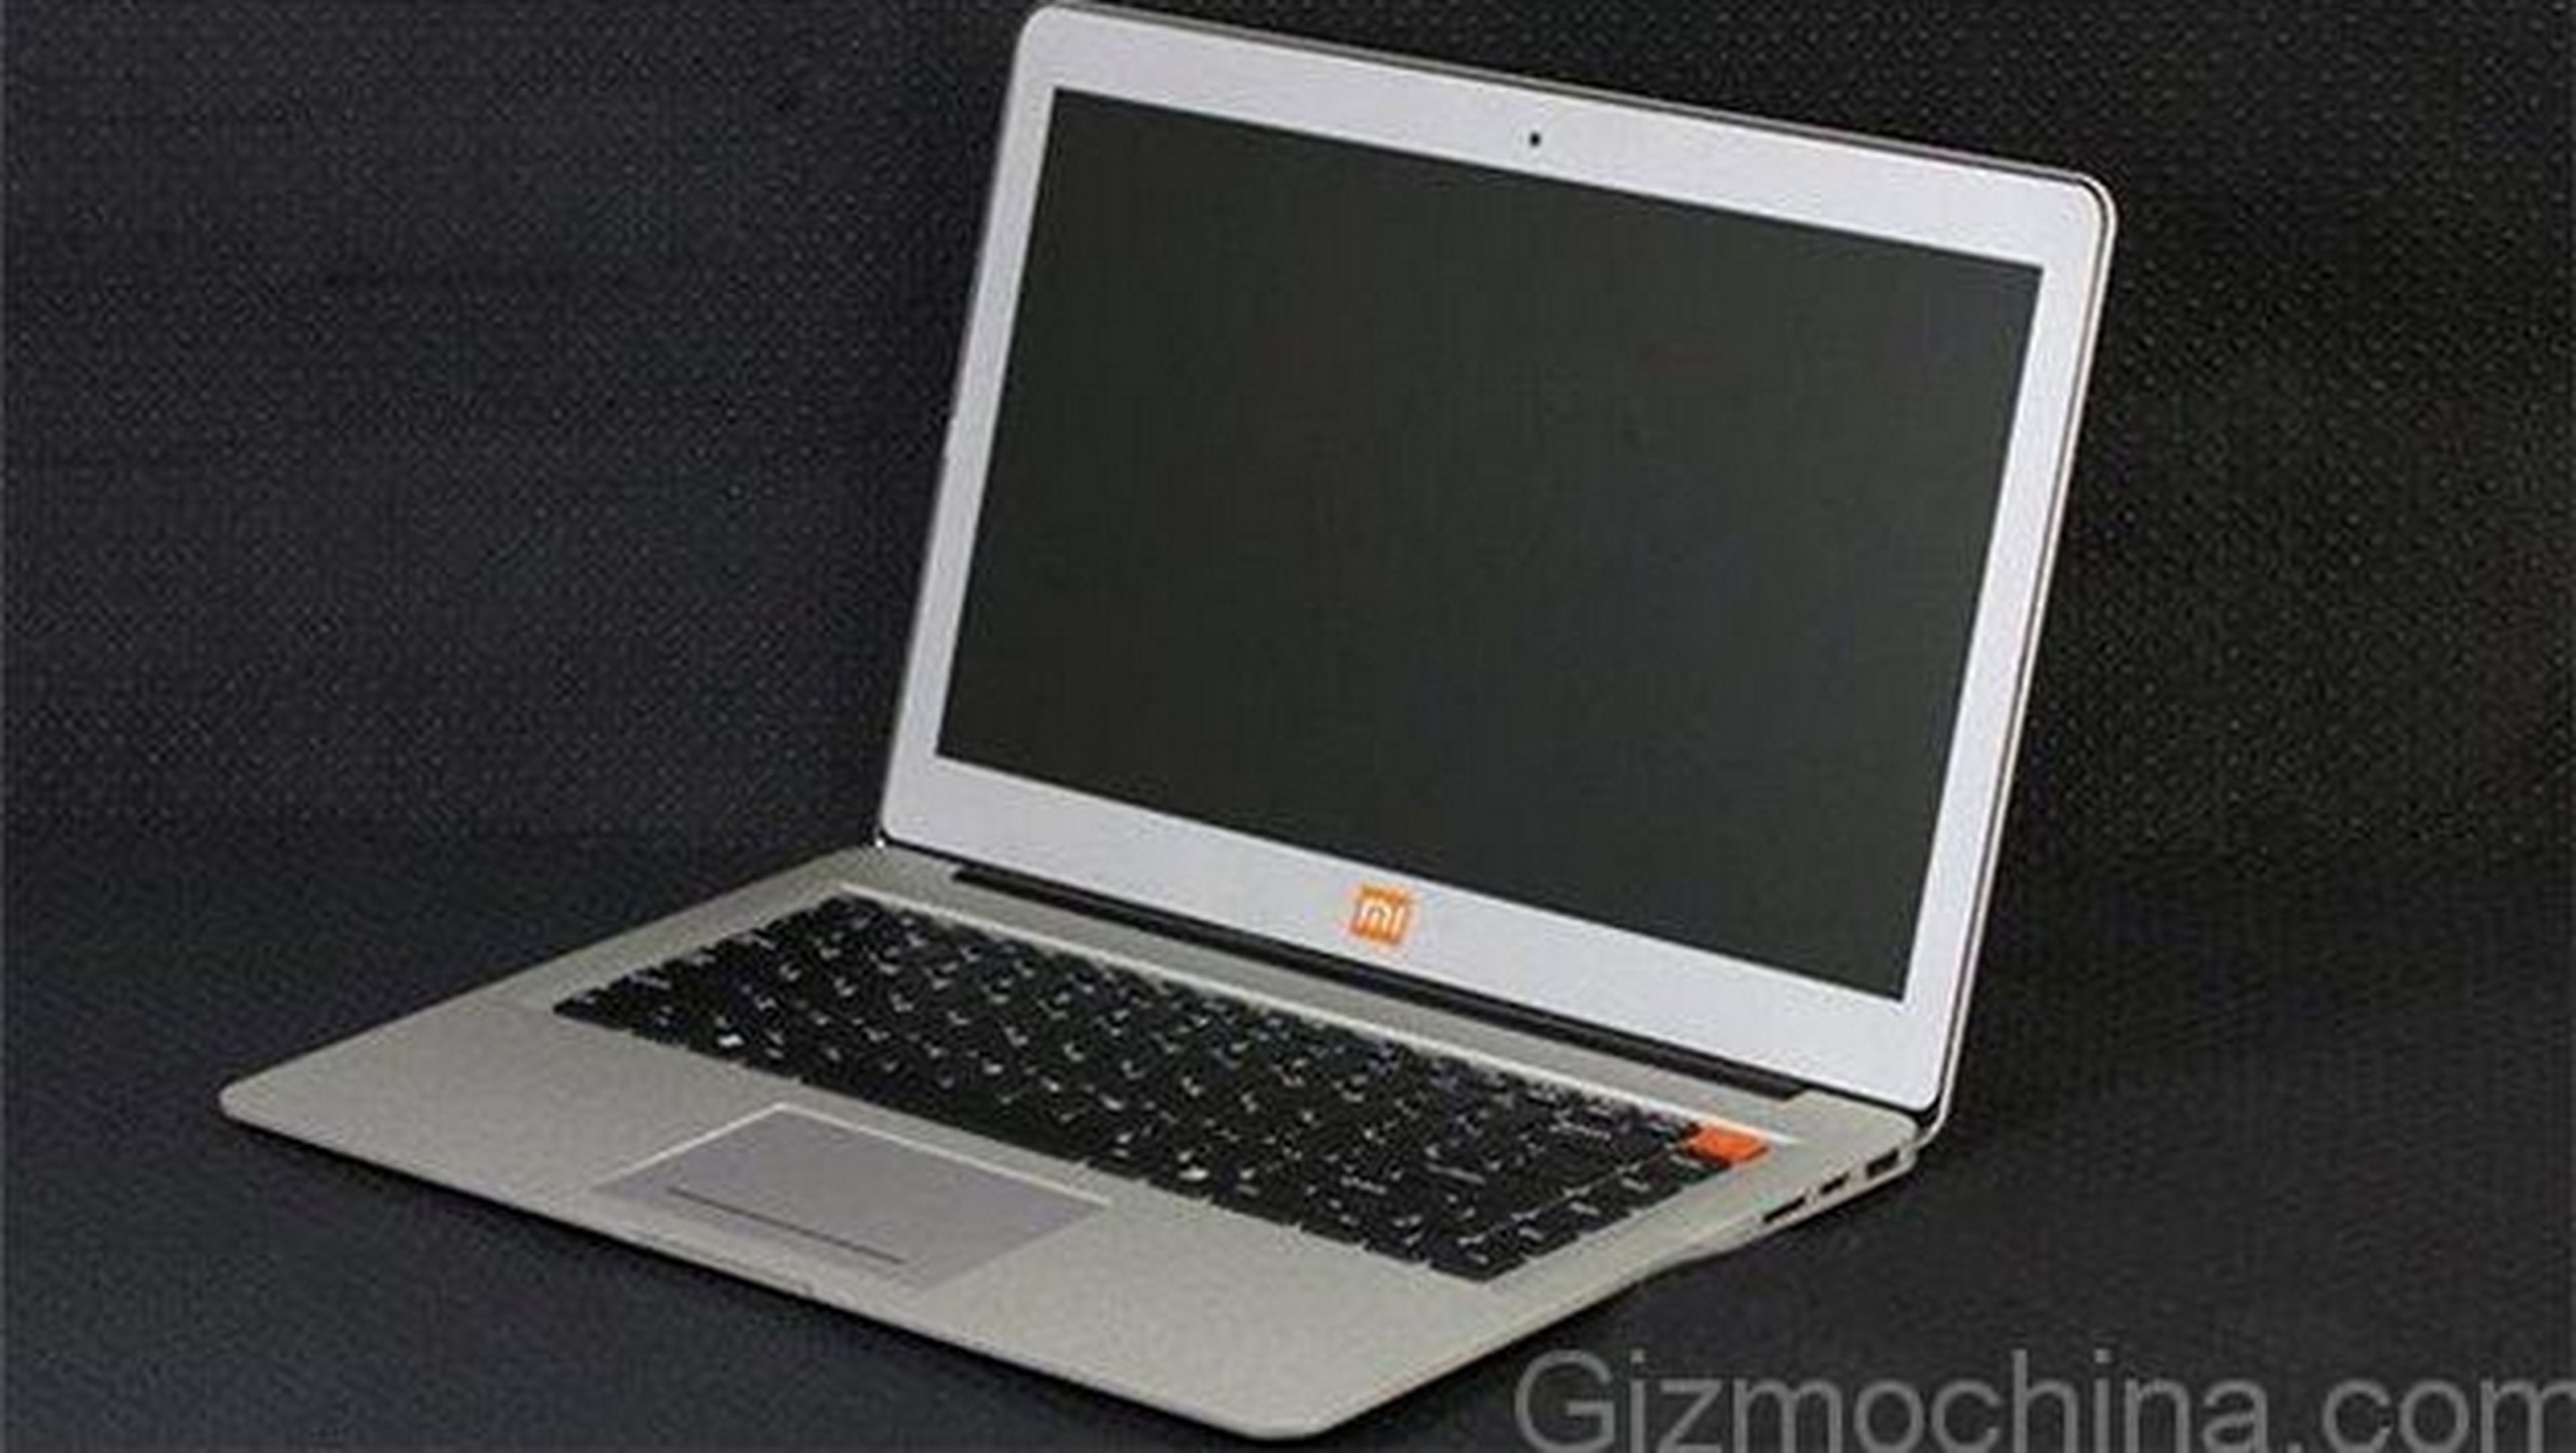 Develado el primer ordenador portátil de Xiaomi, el Xiaomi Mi Notebook. Fotos y características.